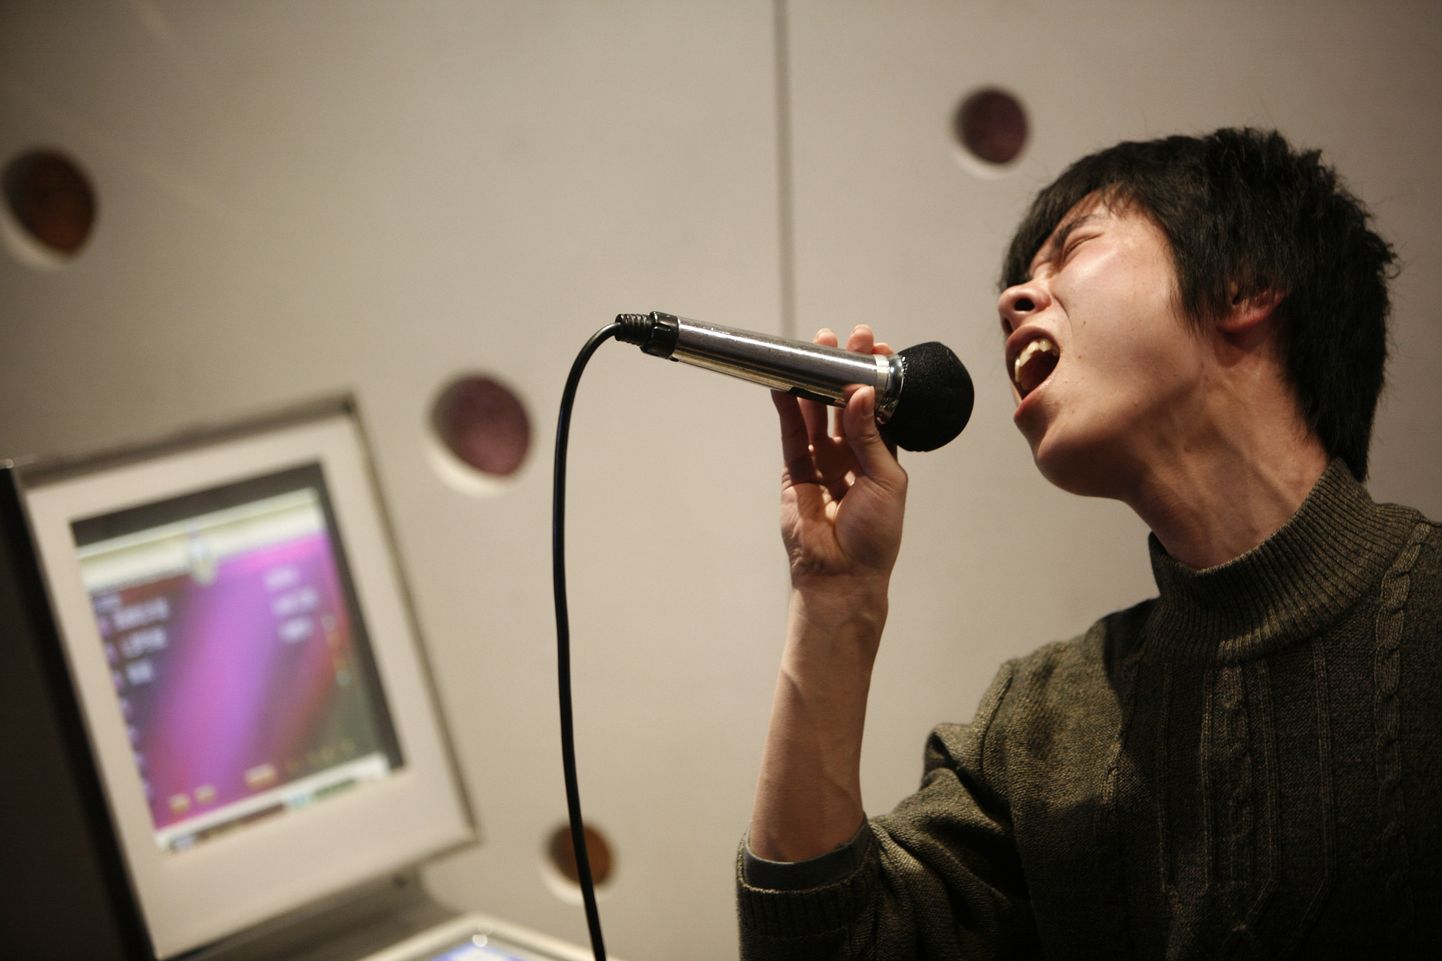 Mees laulmas Shanghai karaokebaaris, mis on Hiinas äärmiselt populaarsed.